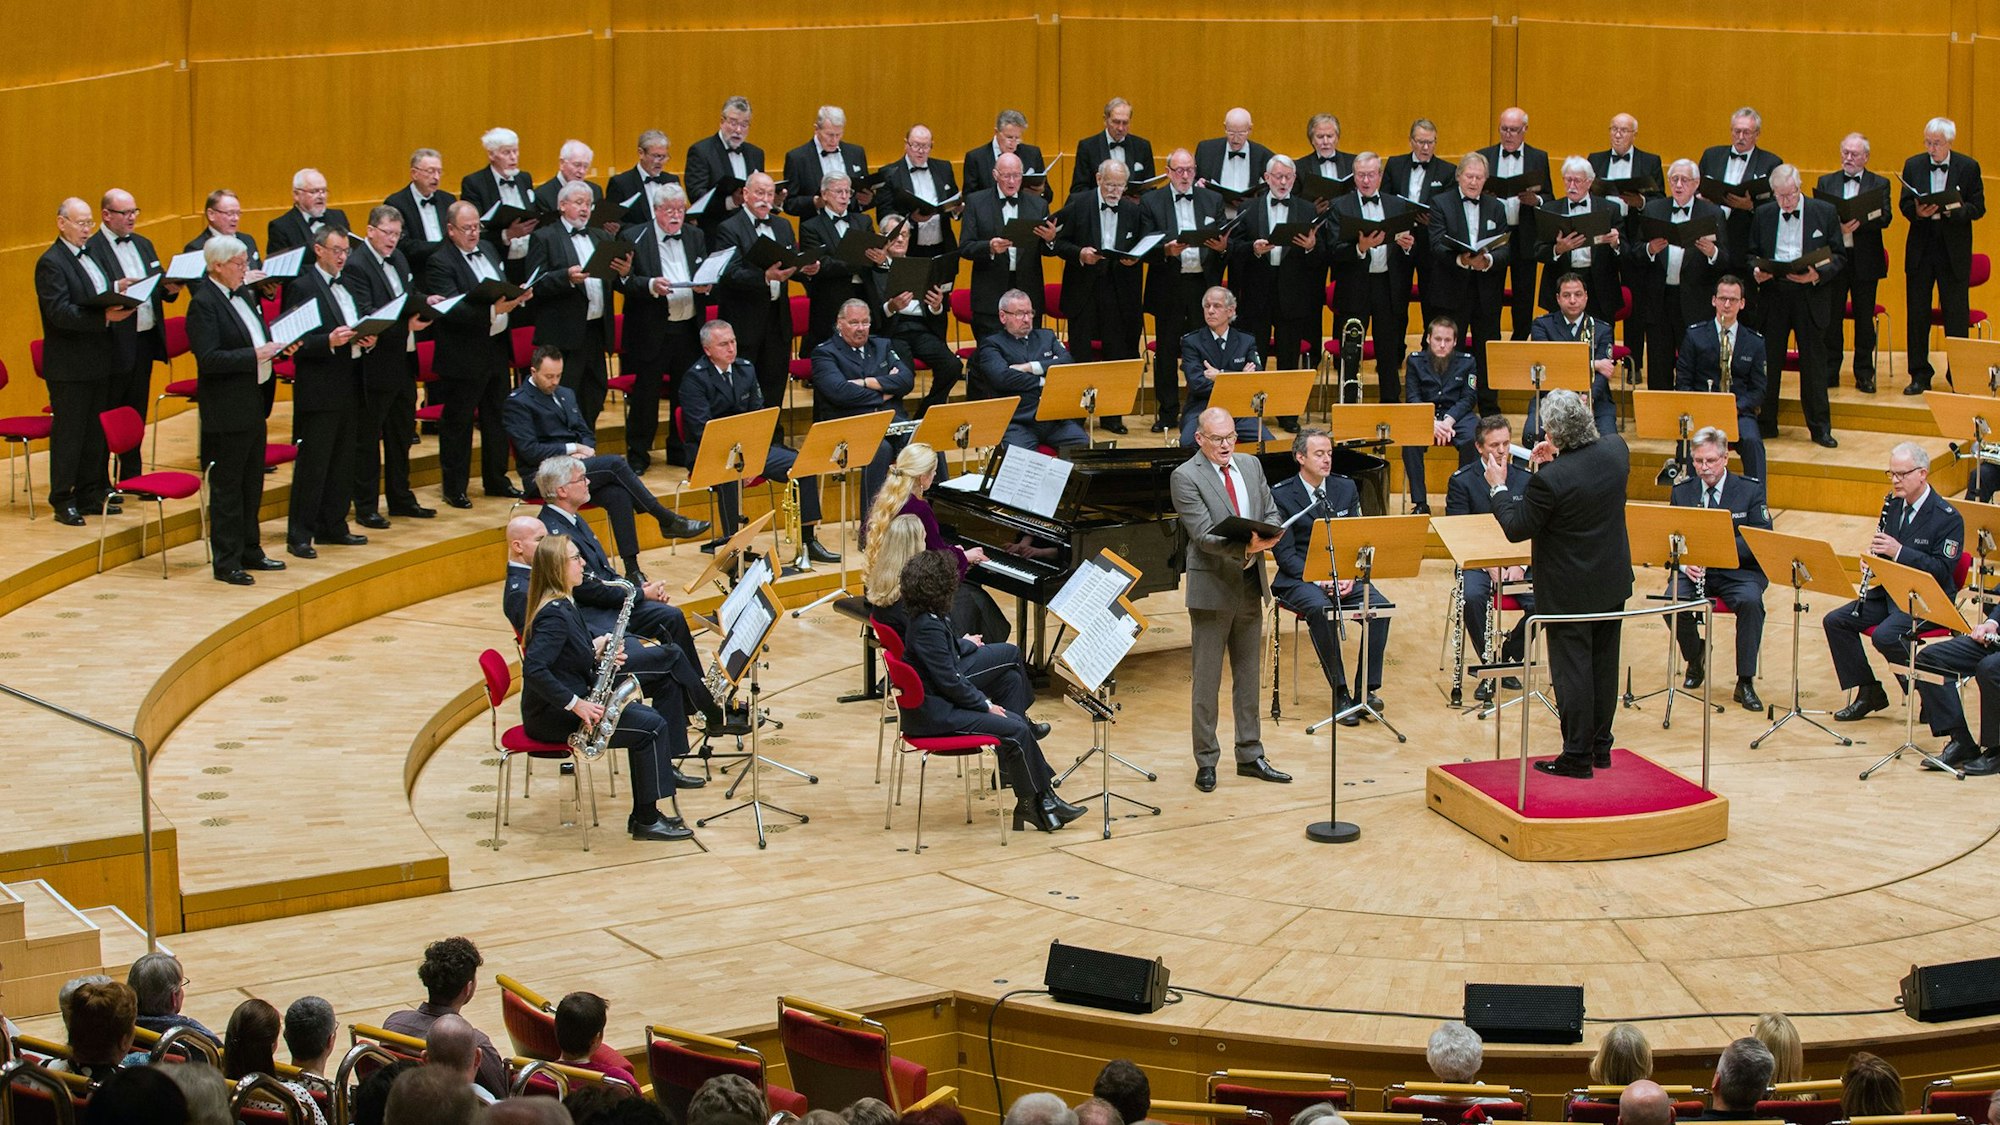 Konzert des Polizeichores Köln anlässlich seines 120-jährigen Bestehens in der Kölner Philharmonie. Zu sehen sind unter anderem Solist und Sänger Ansgar Eimann, Pianistin Alexandra Momot und Dirigent Eugen Momot.